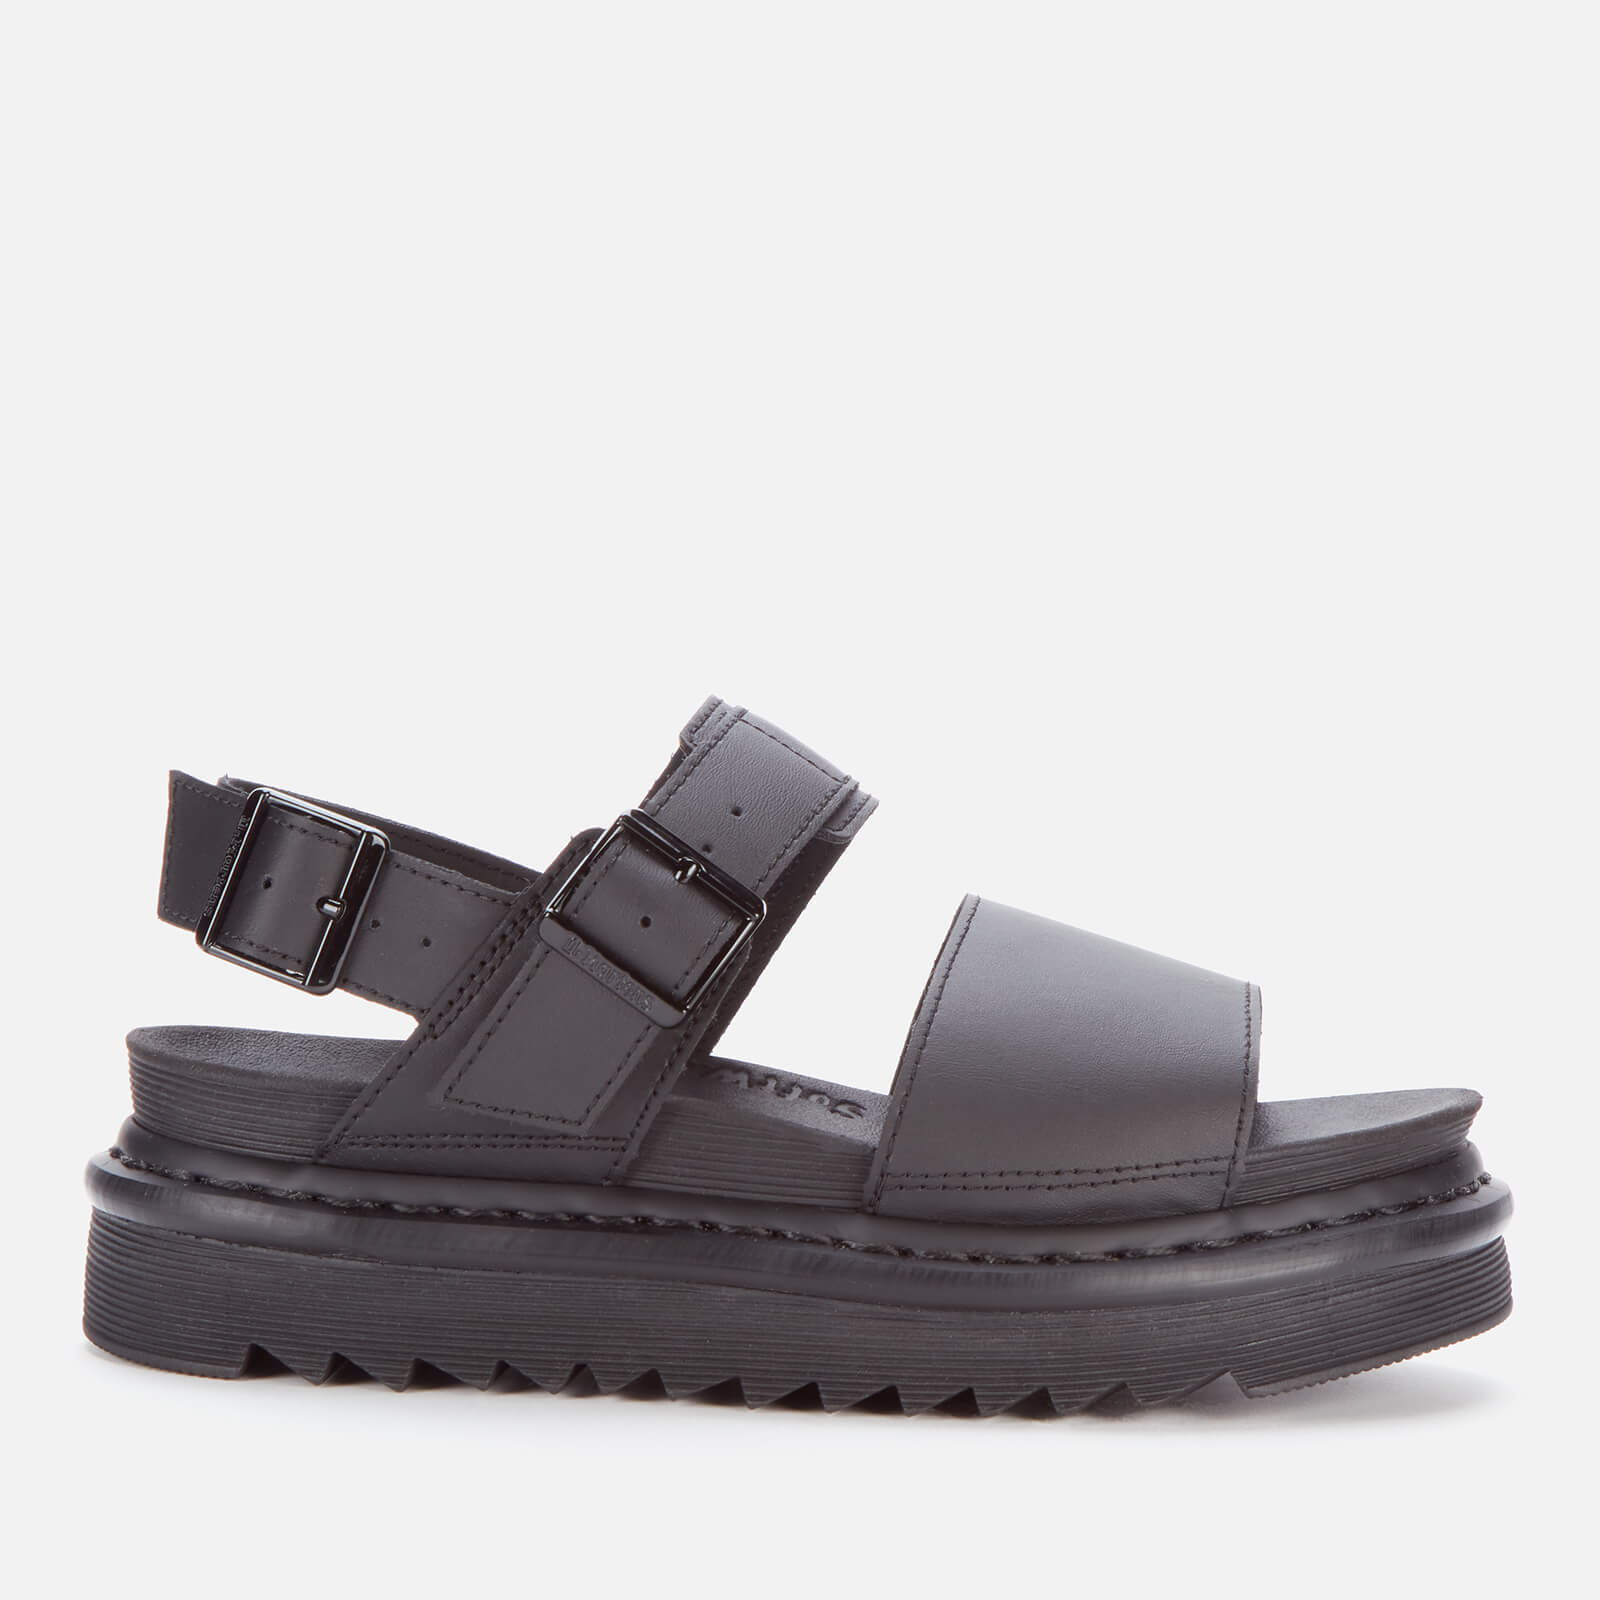 Dr. Martens Women's Voss Leather Double Strap Sandals - Black - UK 5